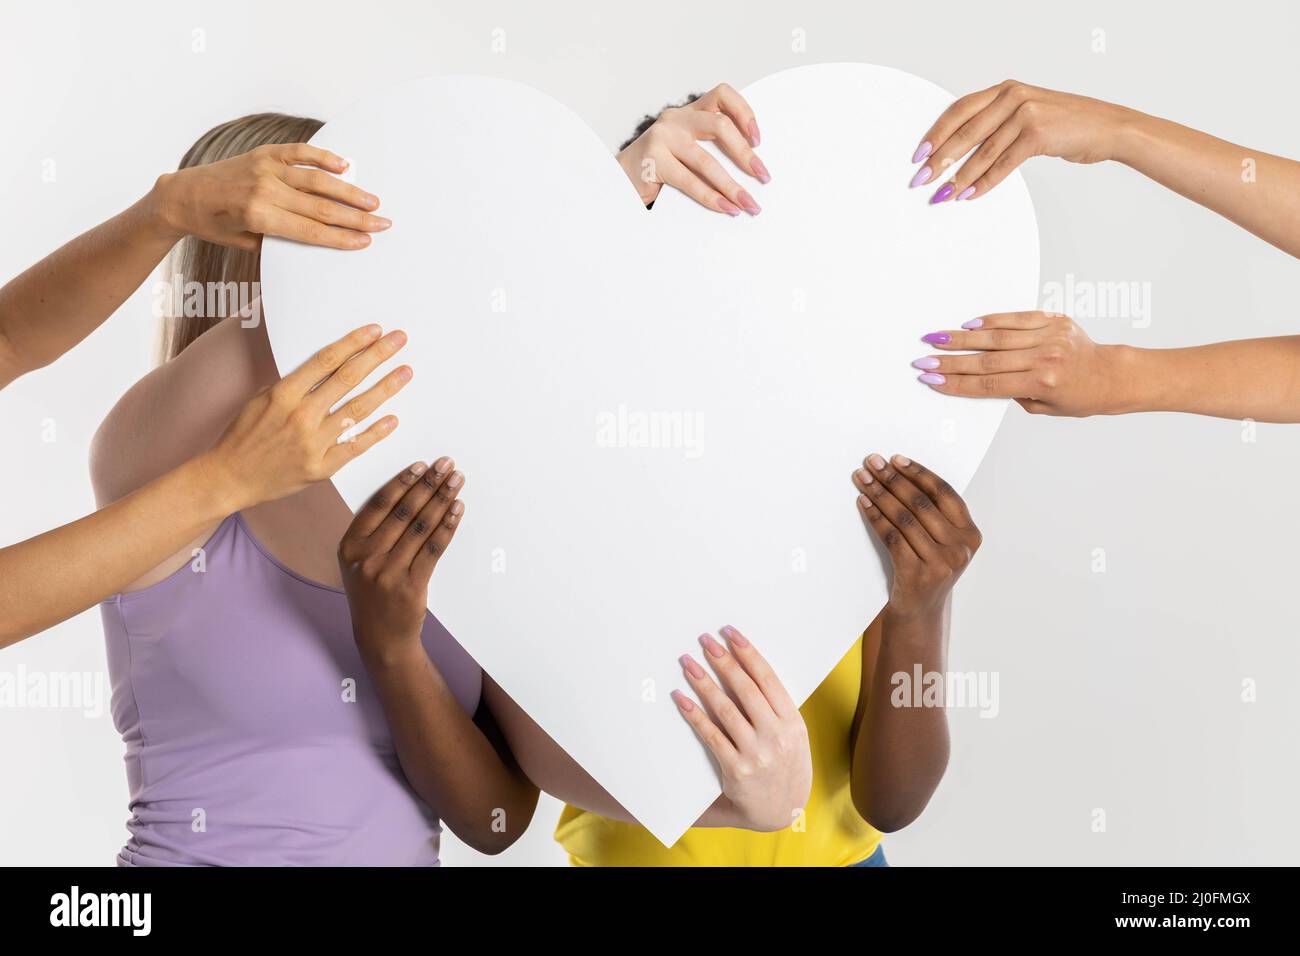 Un grand coeur blanc tenu par huit mains colorées de différentes nations et races. Beaucoup de courses mais un cœur pur commun. Banque D'Images